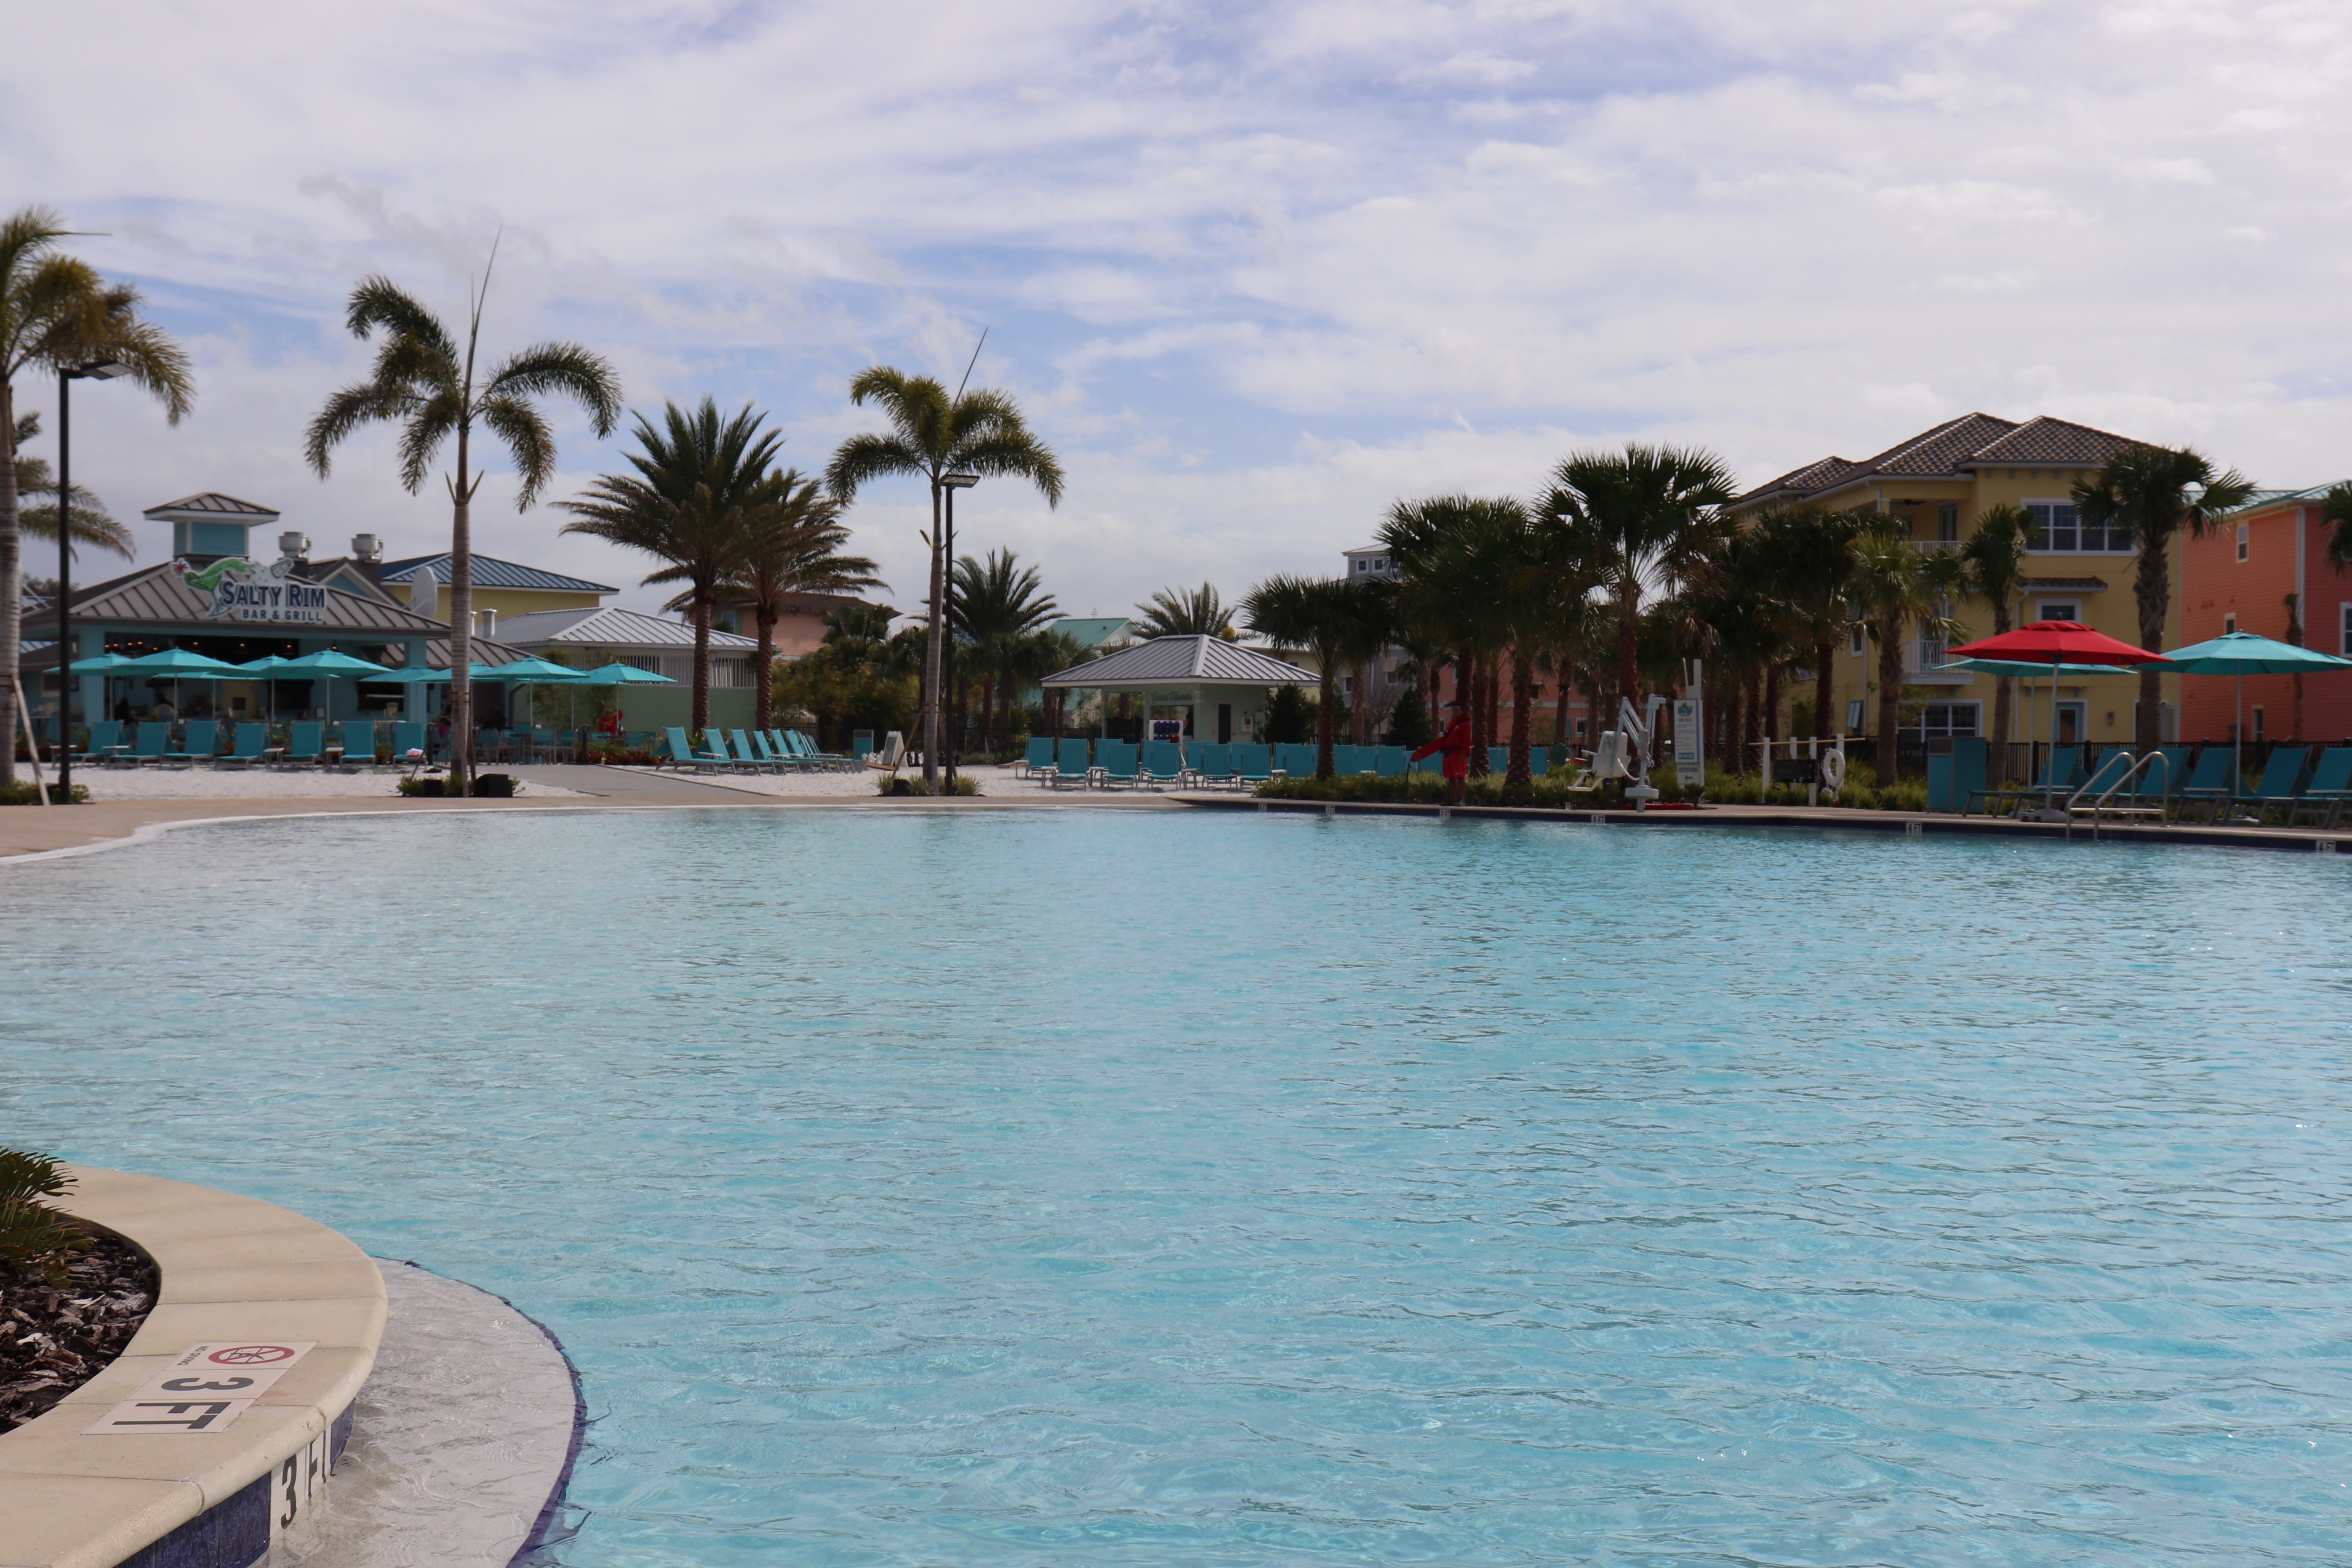 Margaritaville Resort in Orlando: A True Vacation in Paradise